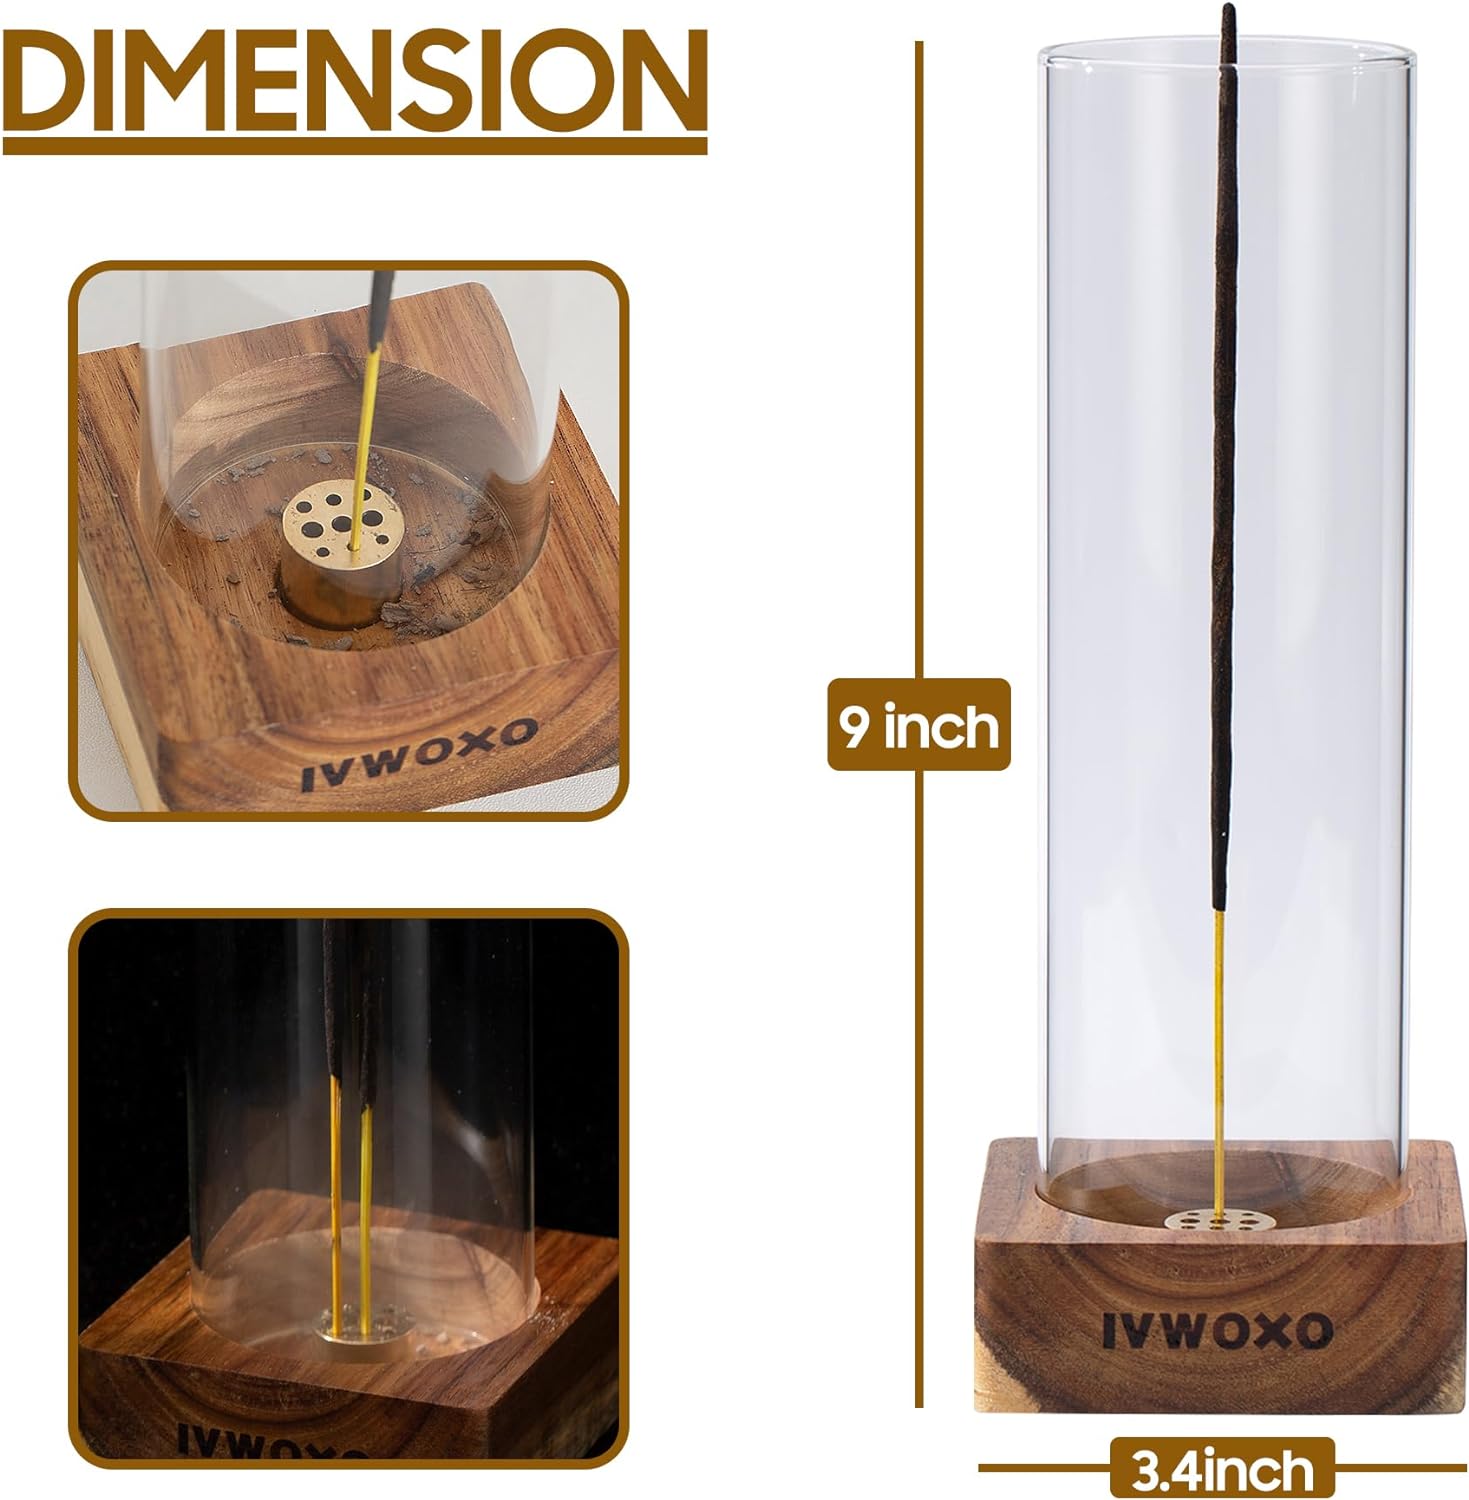 IVWOXO Incense Holder, Wood Incense Holder for Sticks, 100% Anti-Ash Flying Incense Burner, Glass Incense Burner Holder (Round-Two)